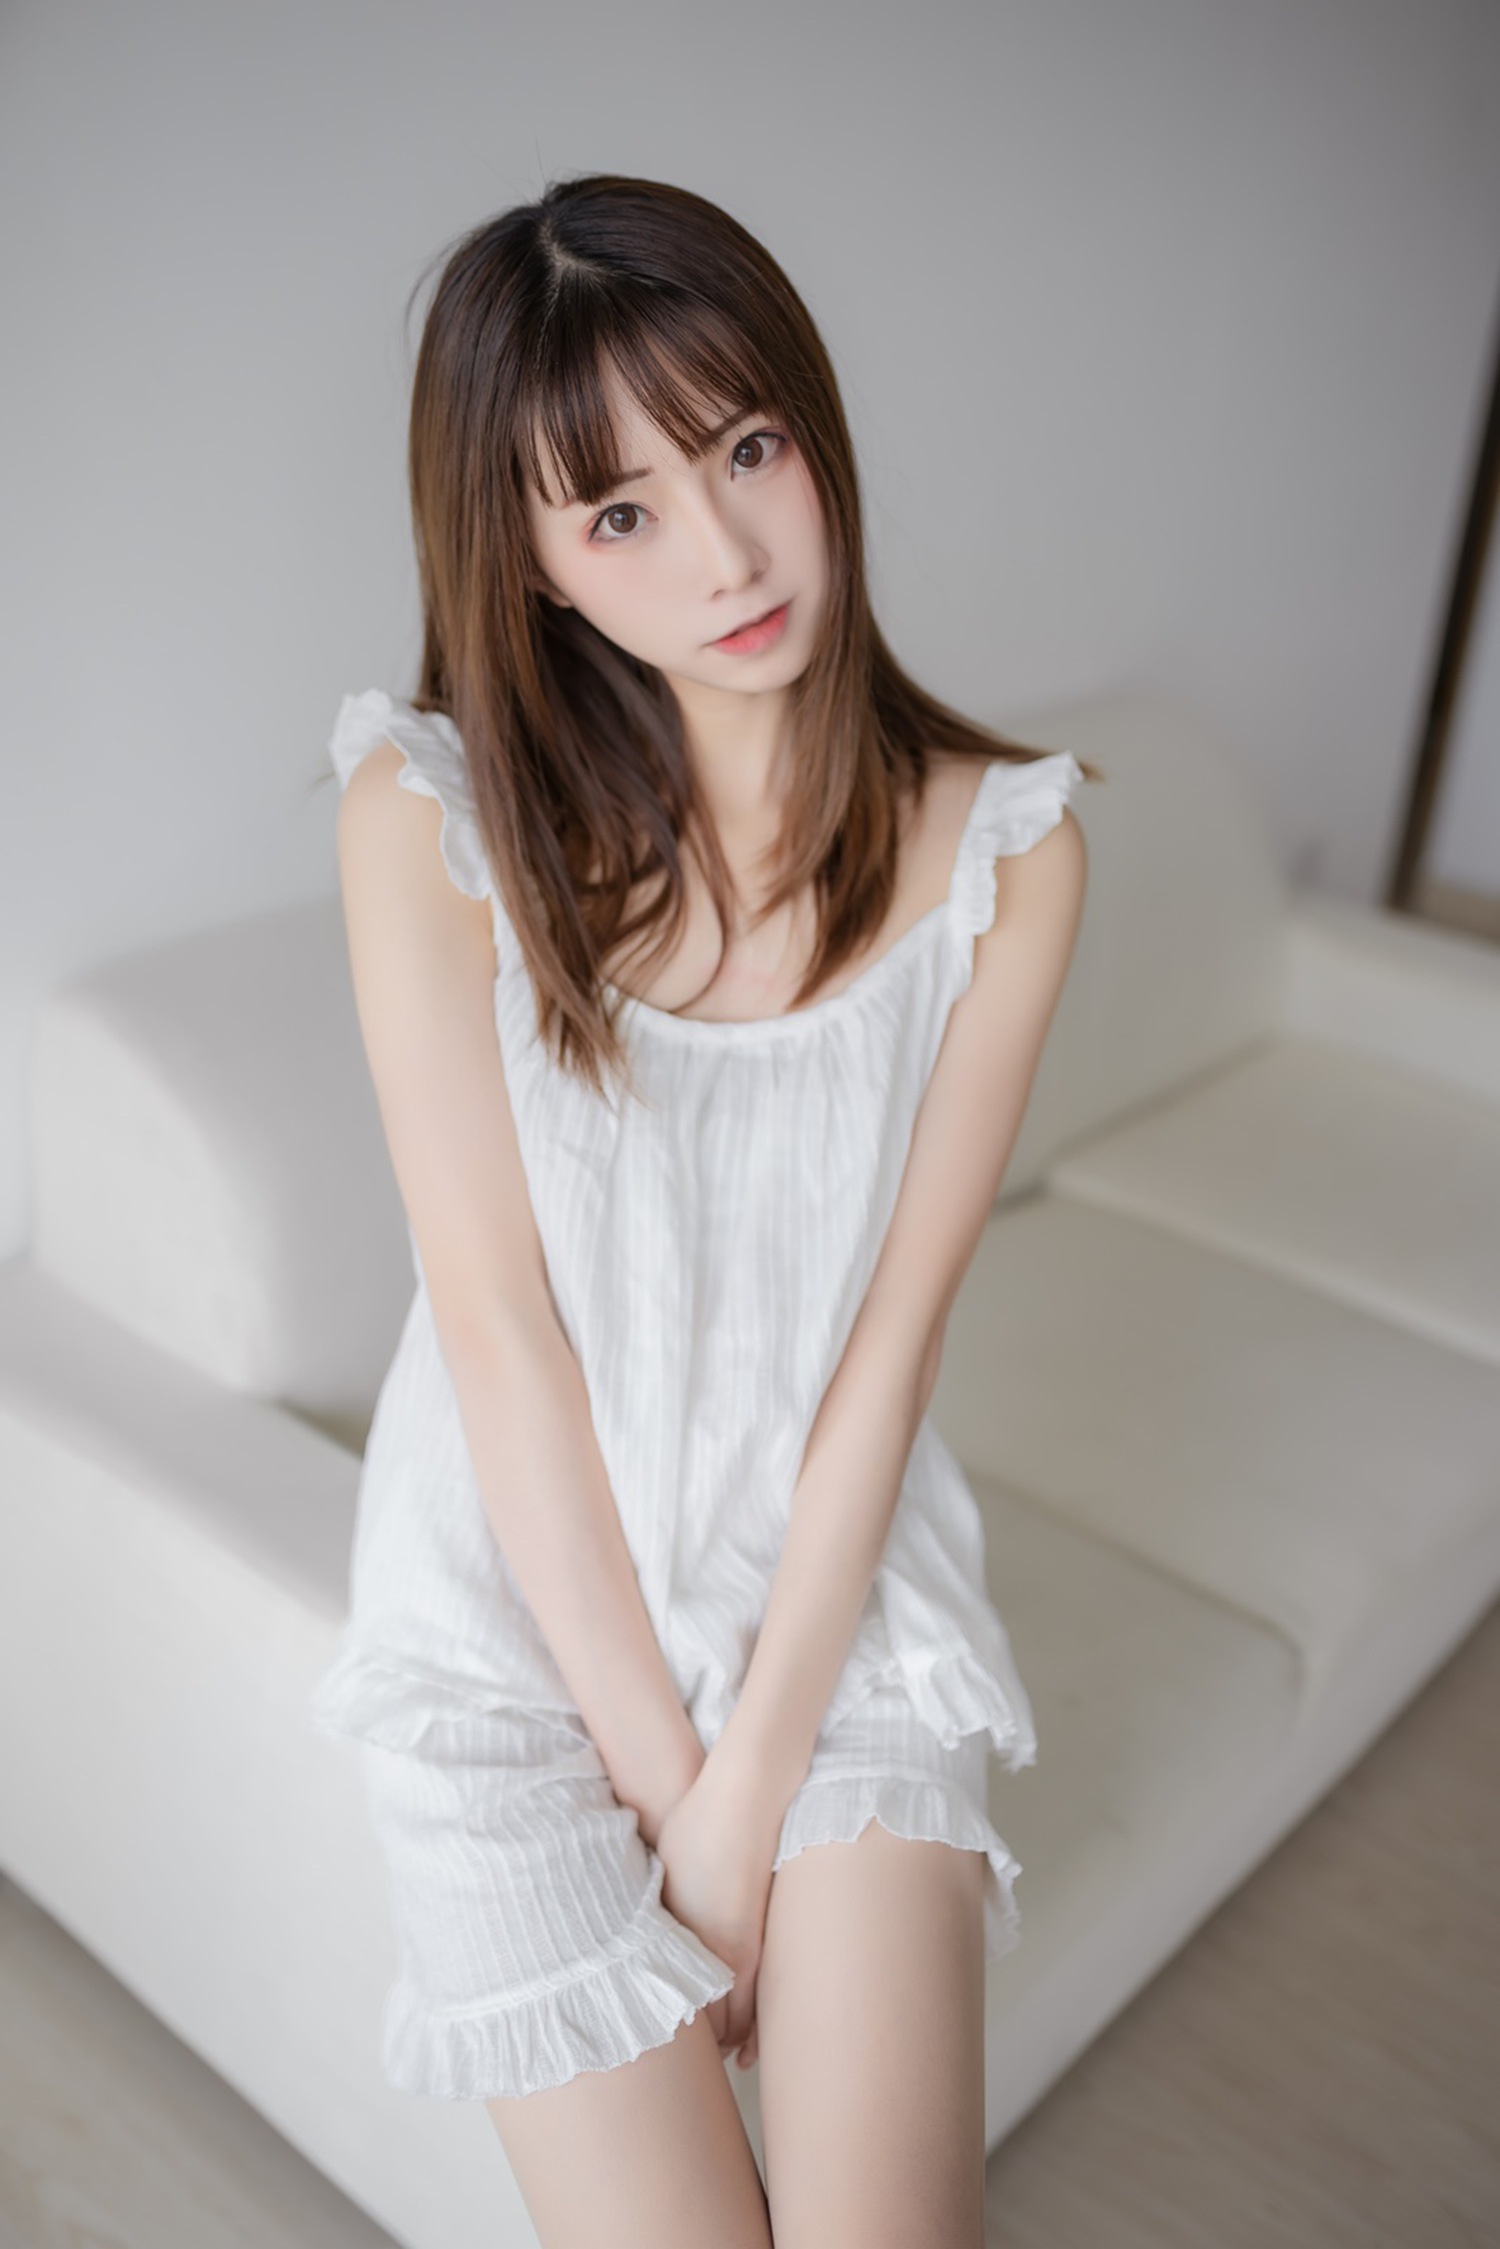 绮太郎 Kitaro &#8211; 白色睡衣 [46P]第8张